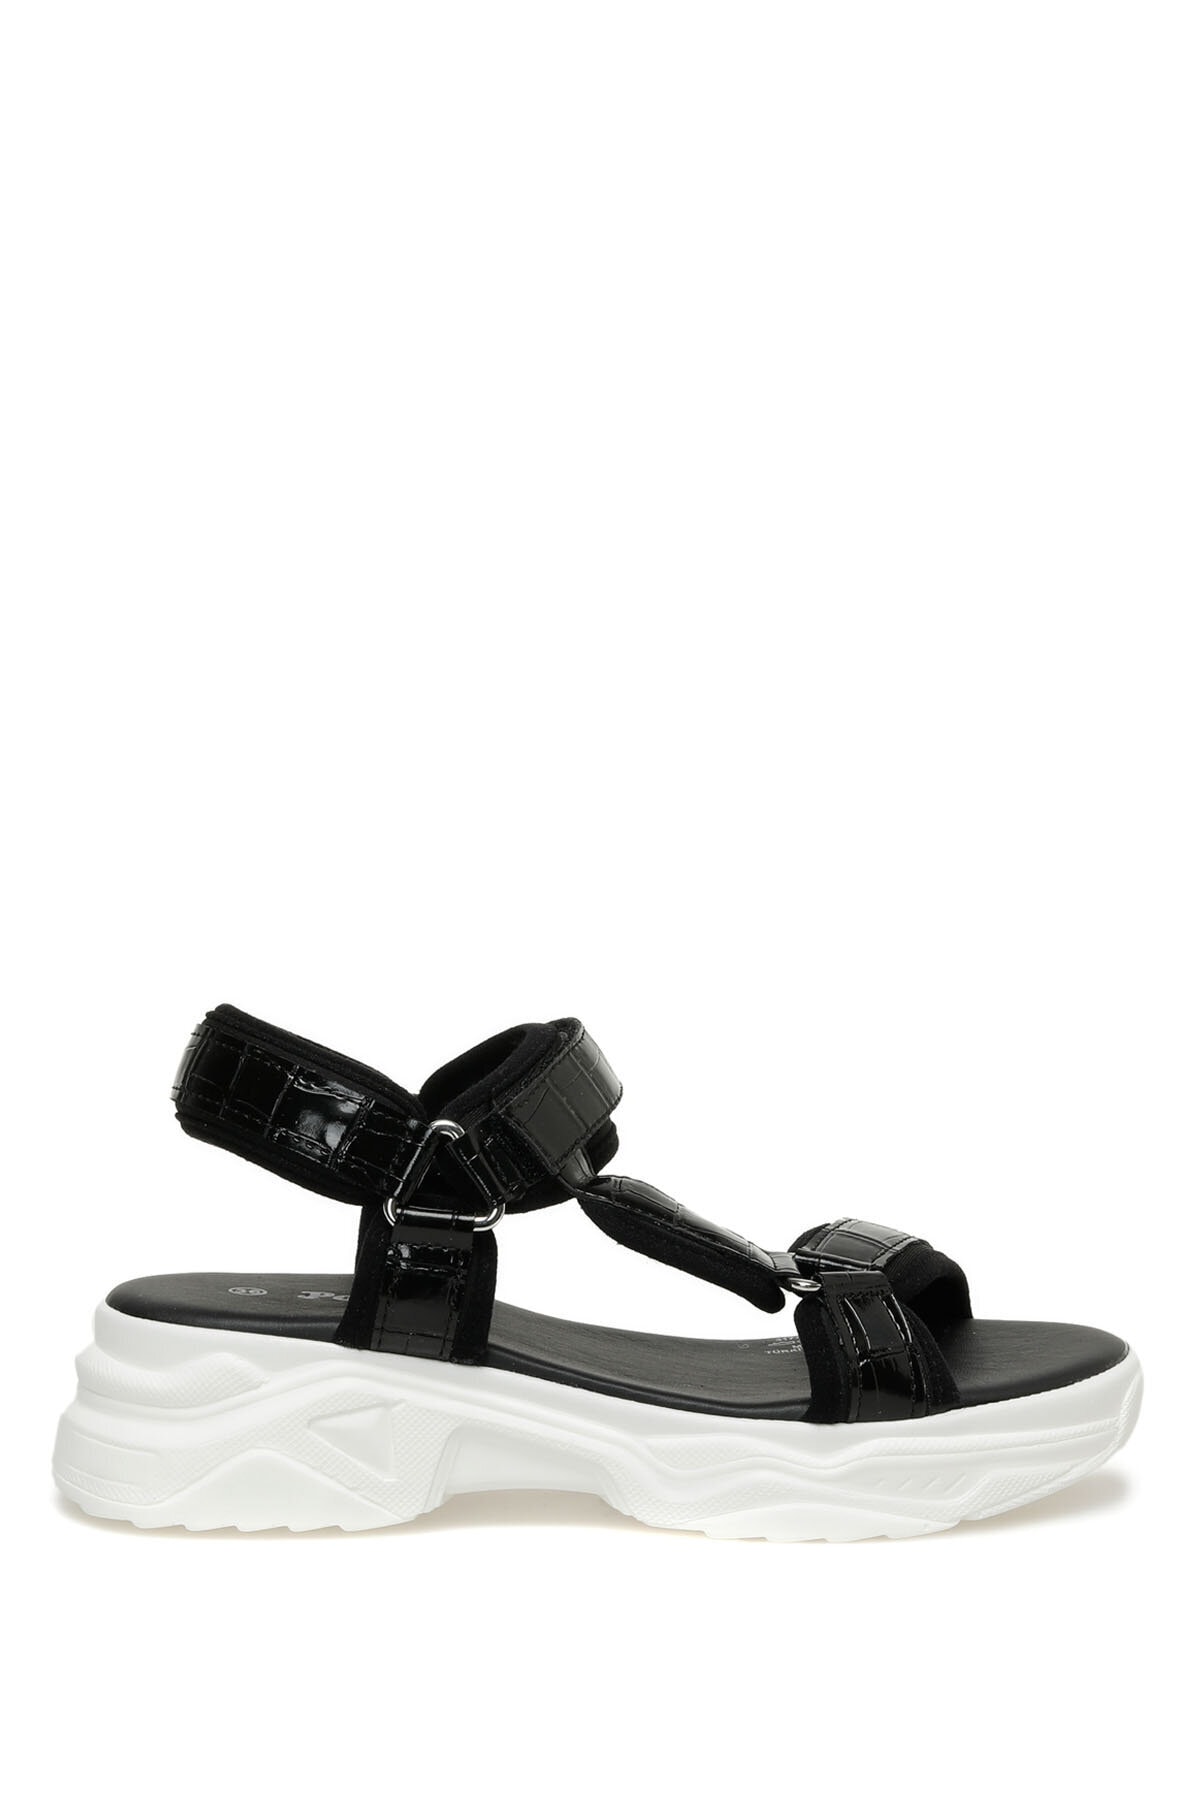 Levně Polaris 317739.z 3fx Black Women's Sport Sandals